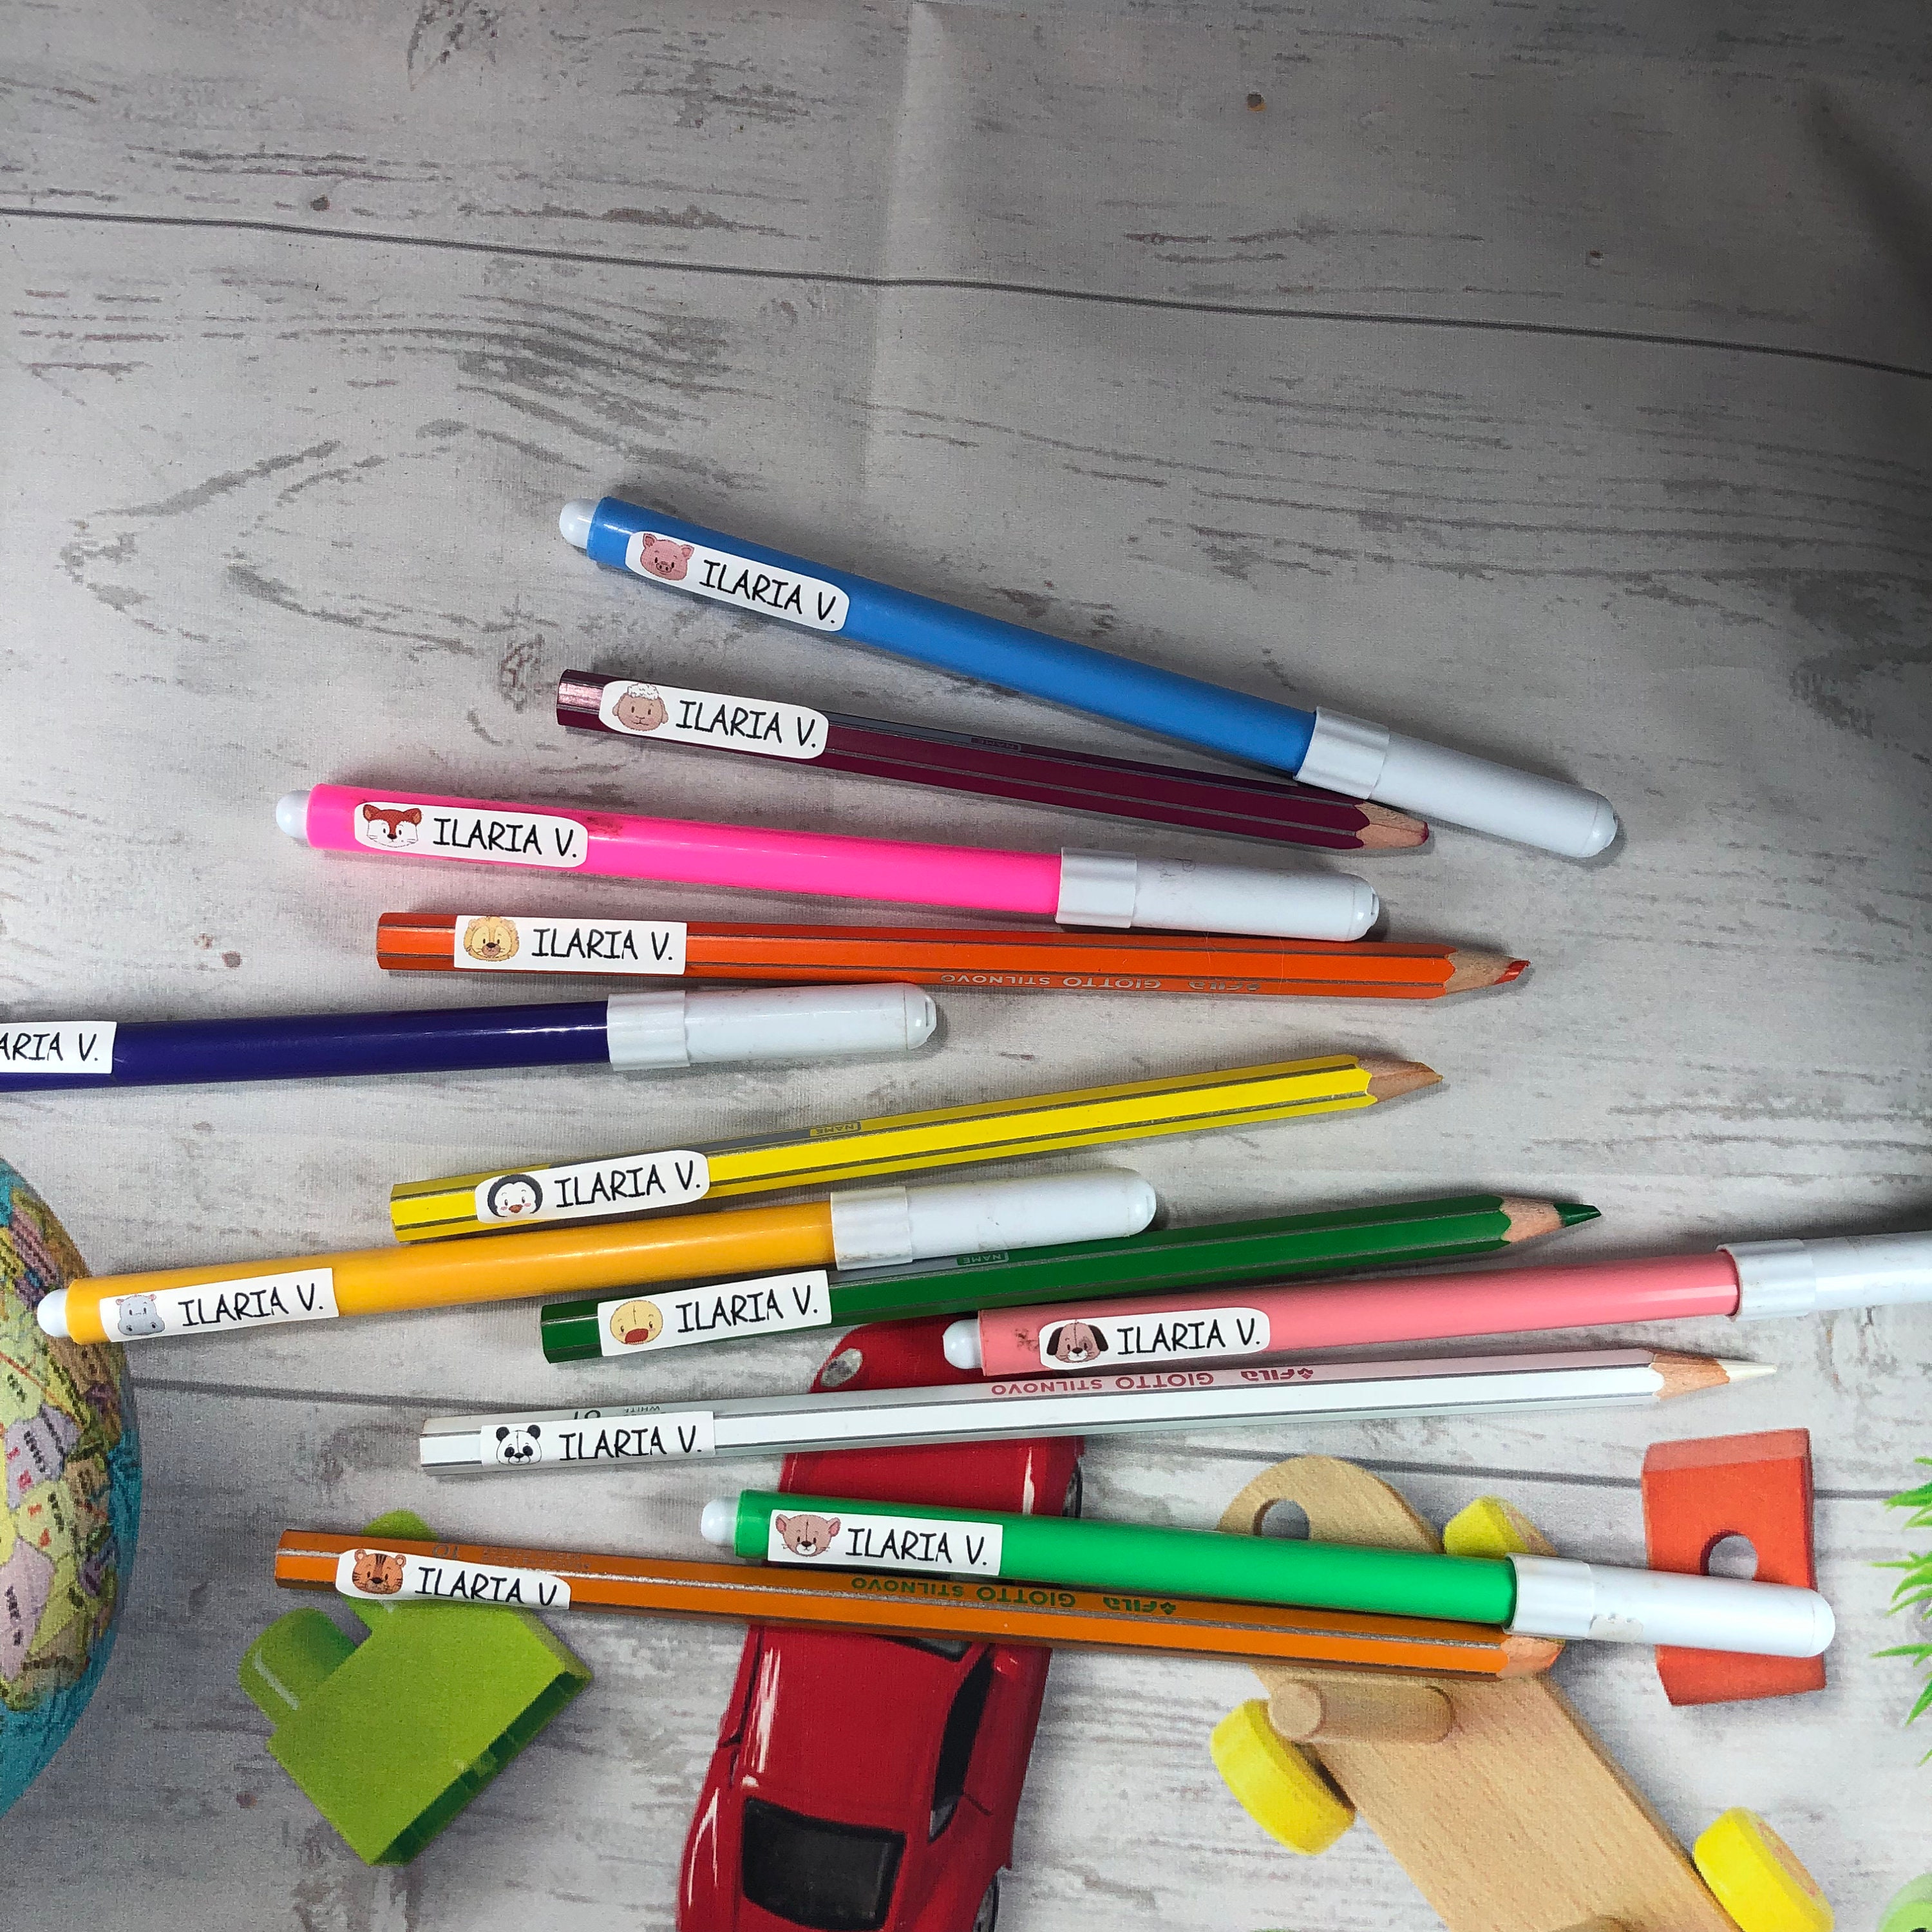 Etichette adesive piccole per matite e pennarelli